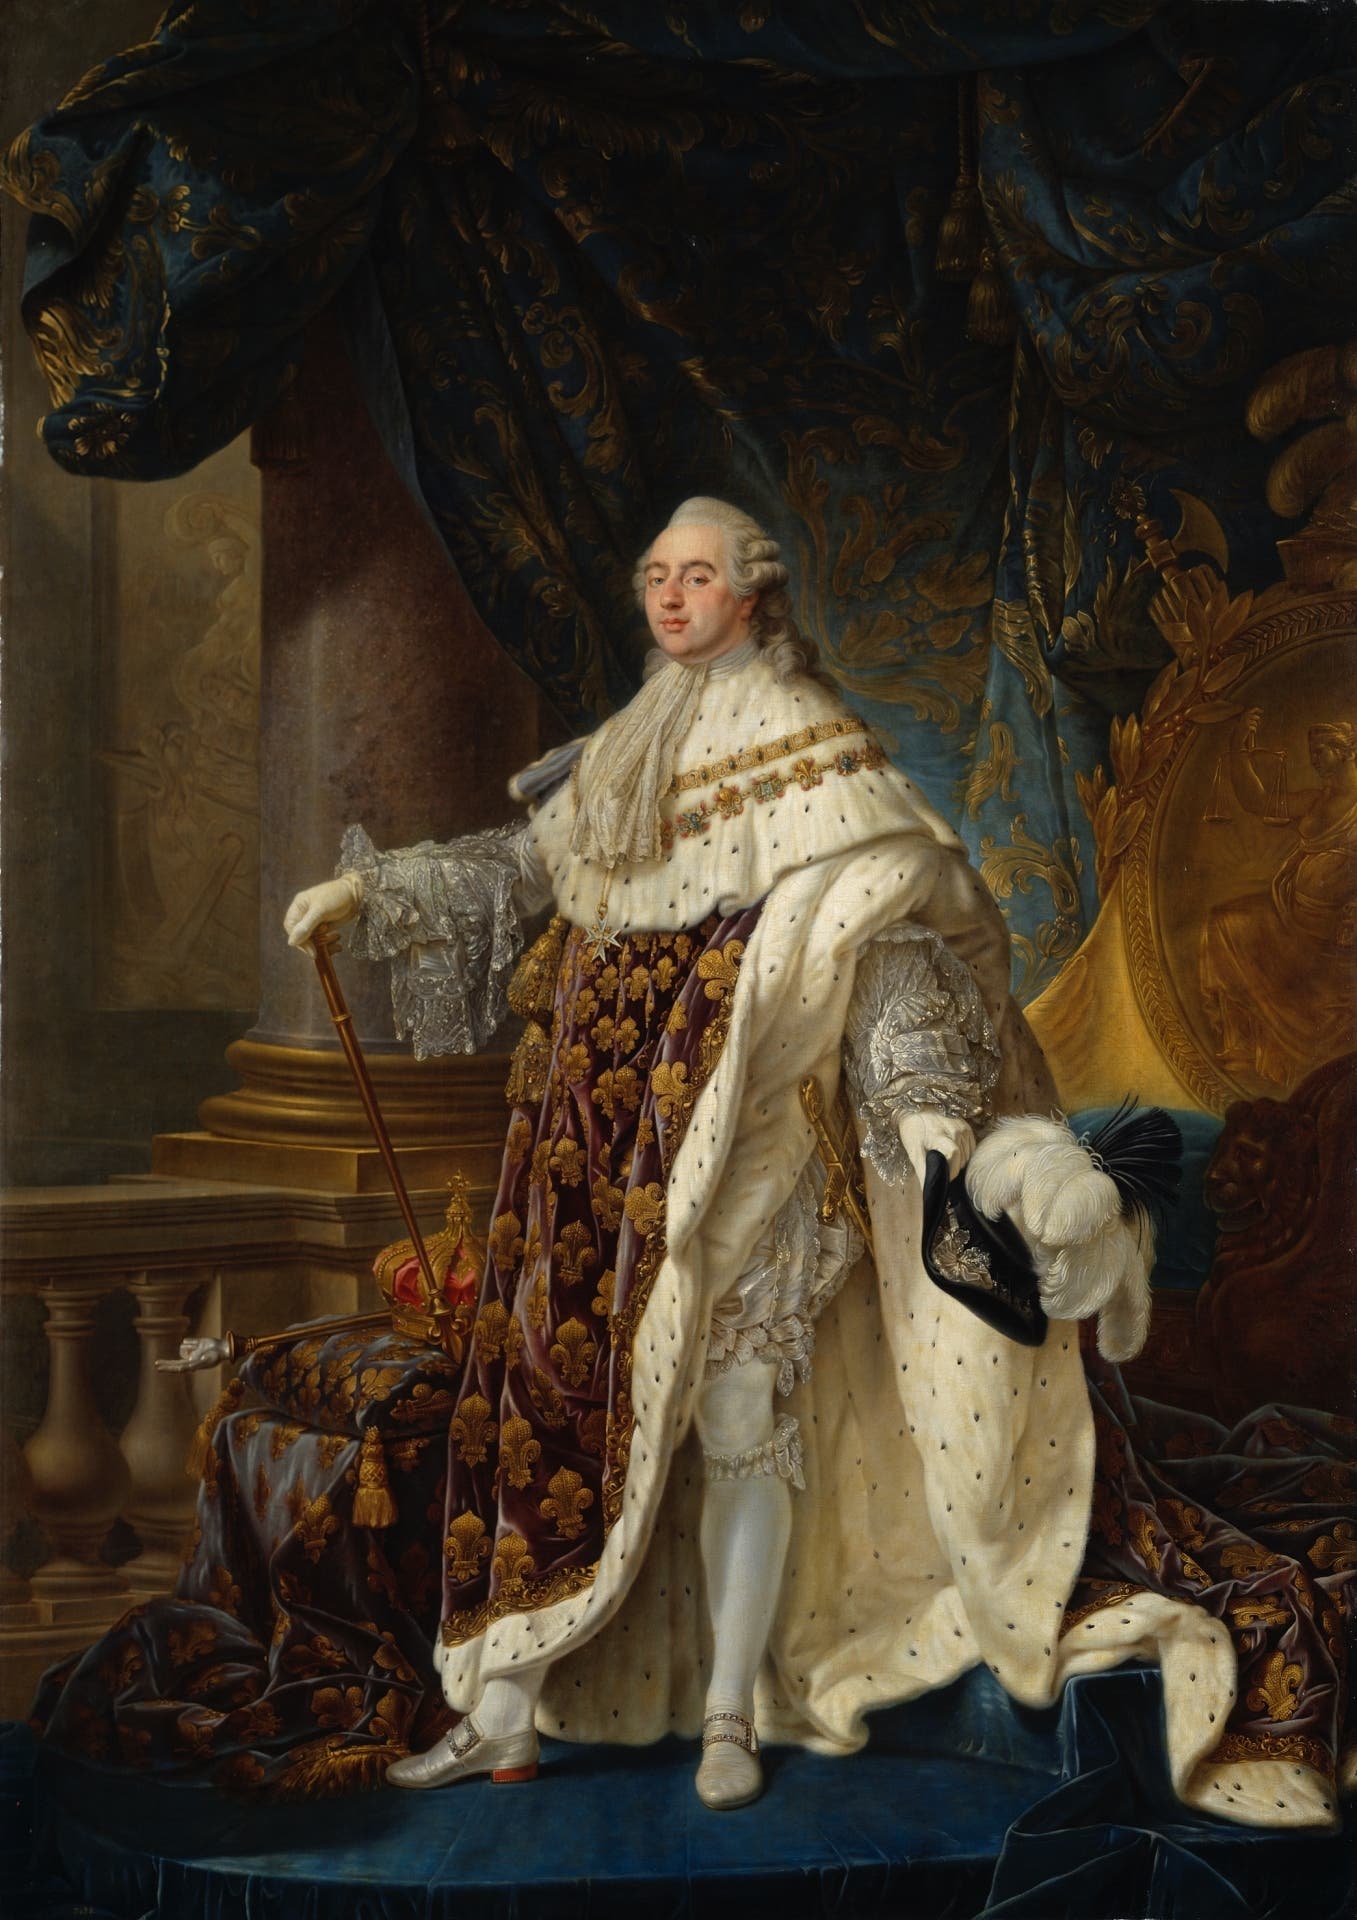 Portrait du roi Louis XVI